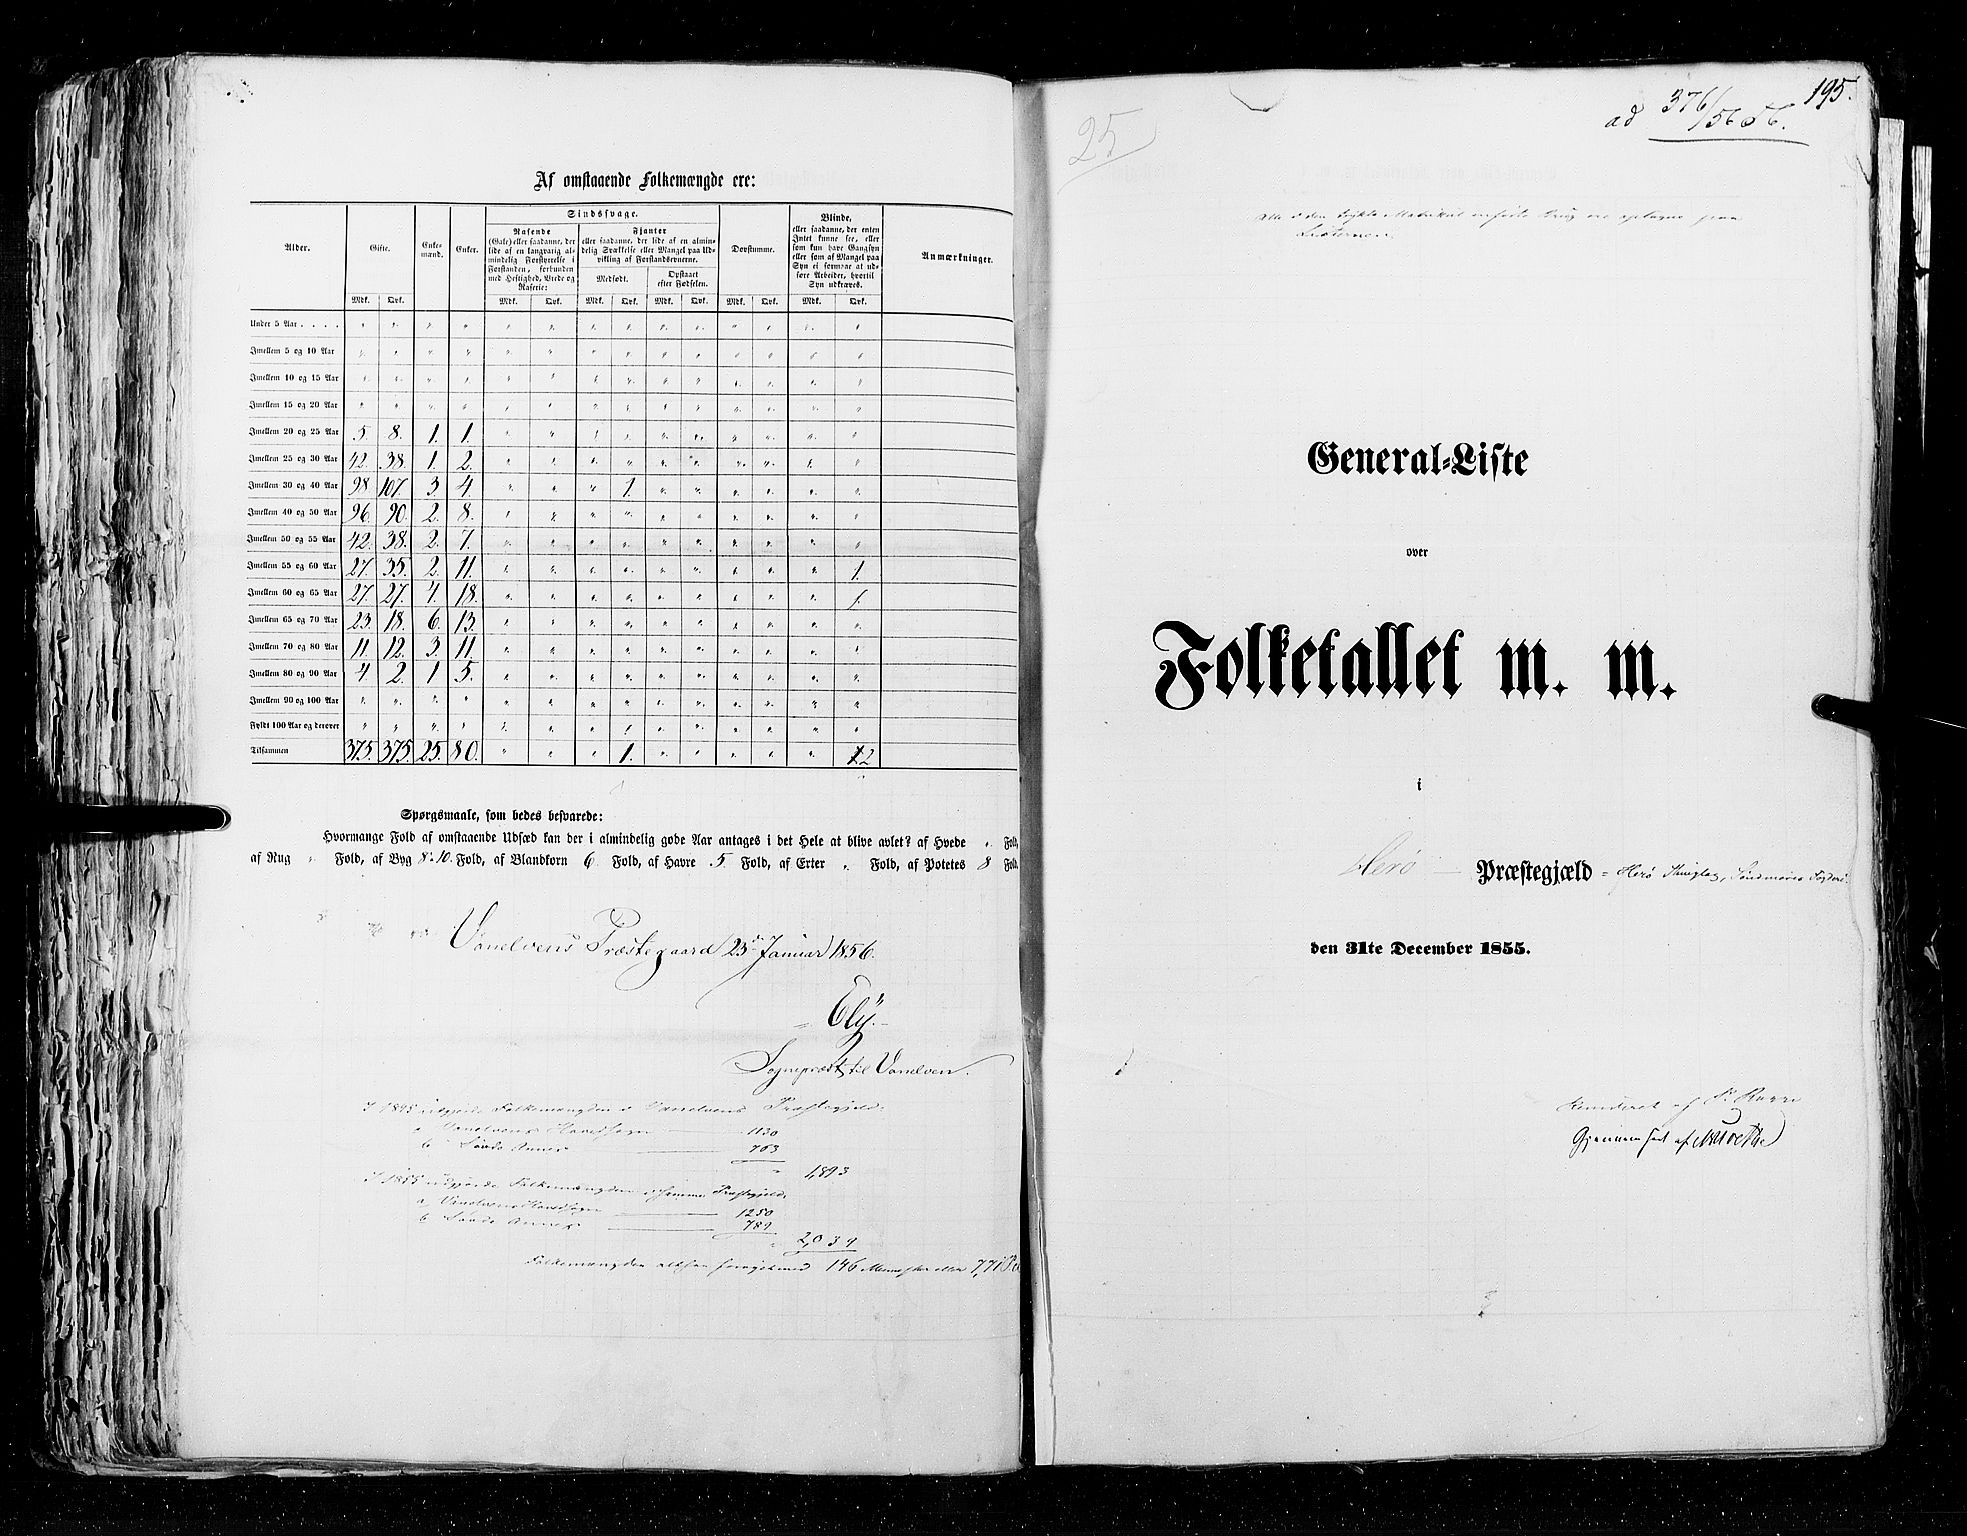 RA, Folketellingen 1855, bind 5: Nordre Bergenhus amt, Romsdal amt og Søndre Trondhjem amt, 1855, s. 195